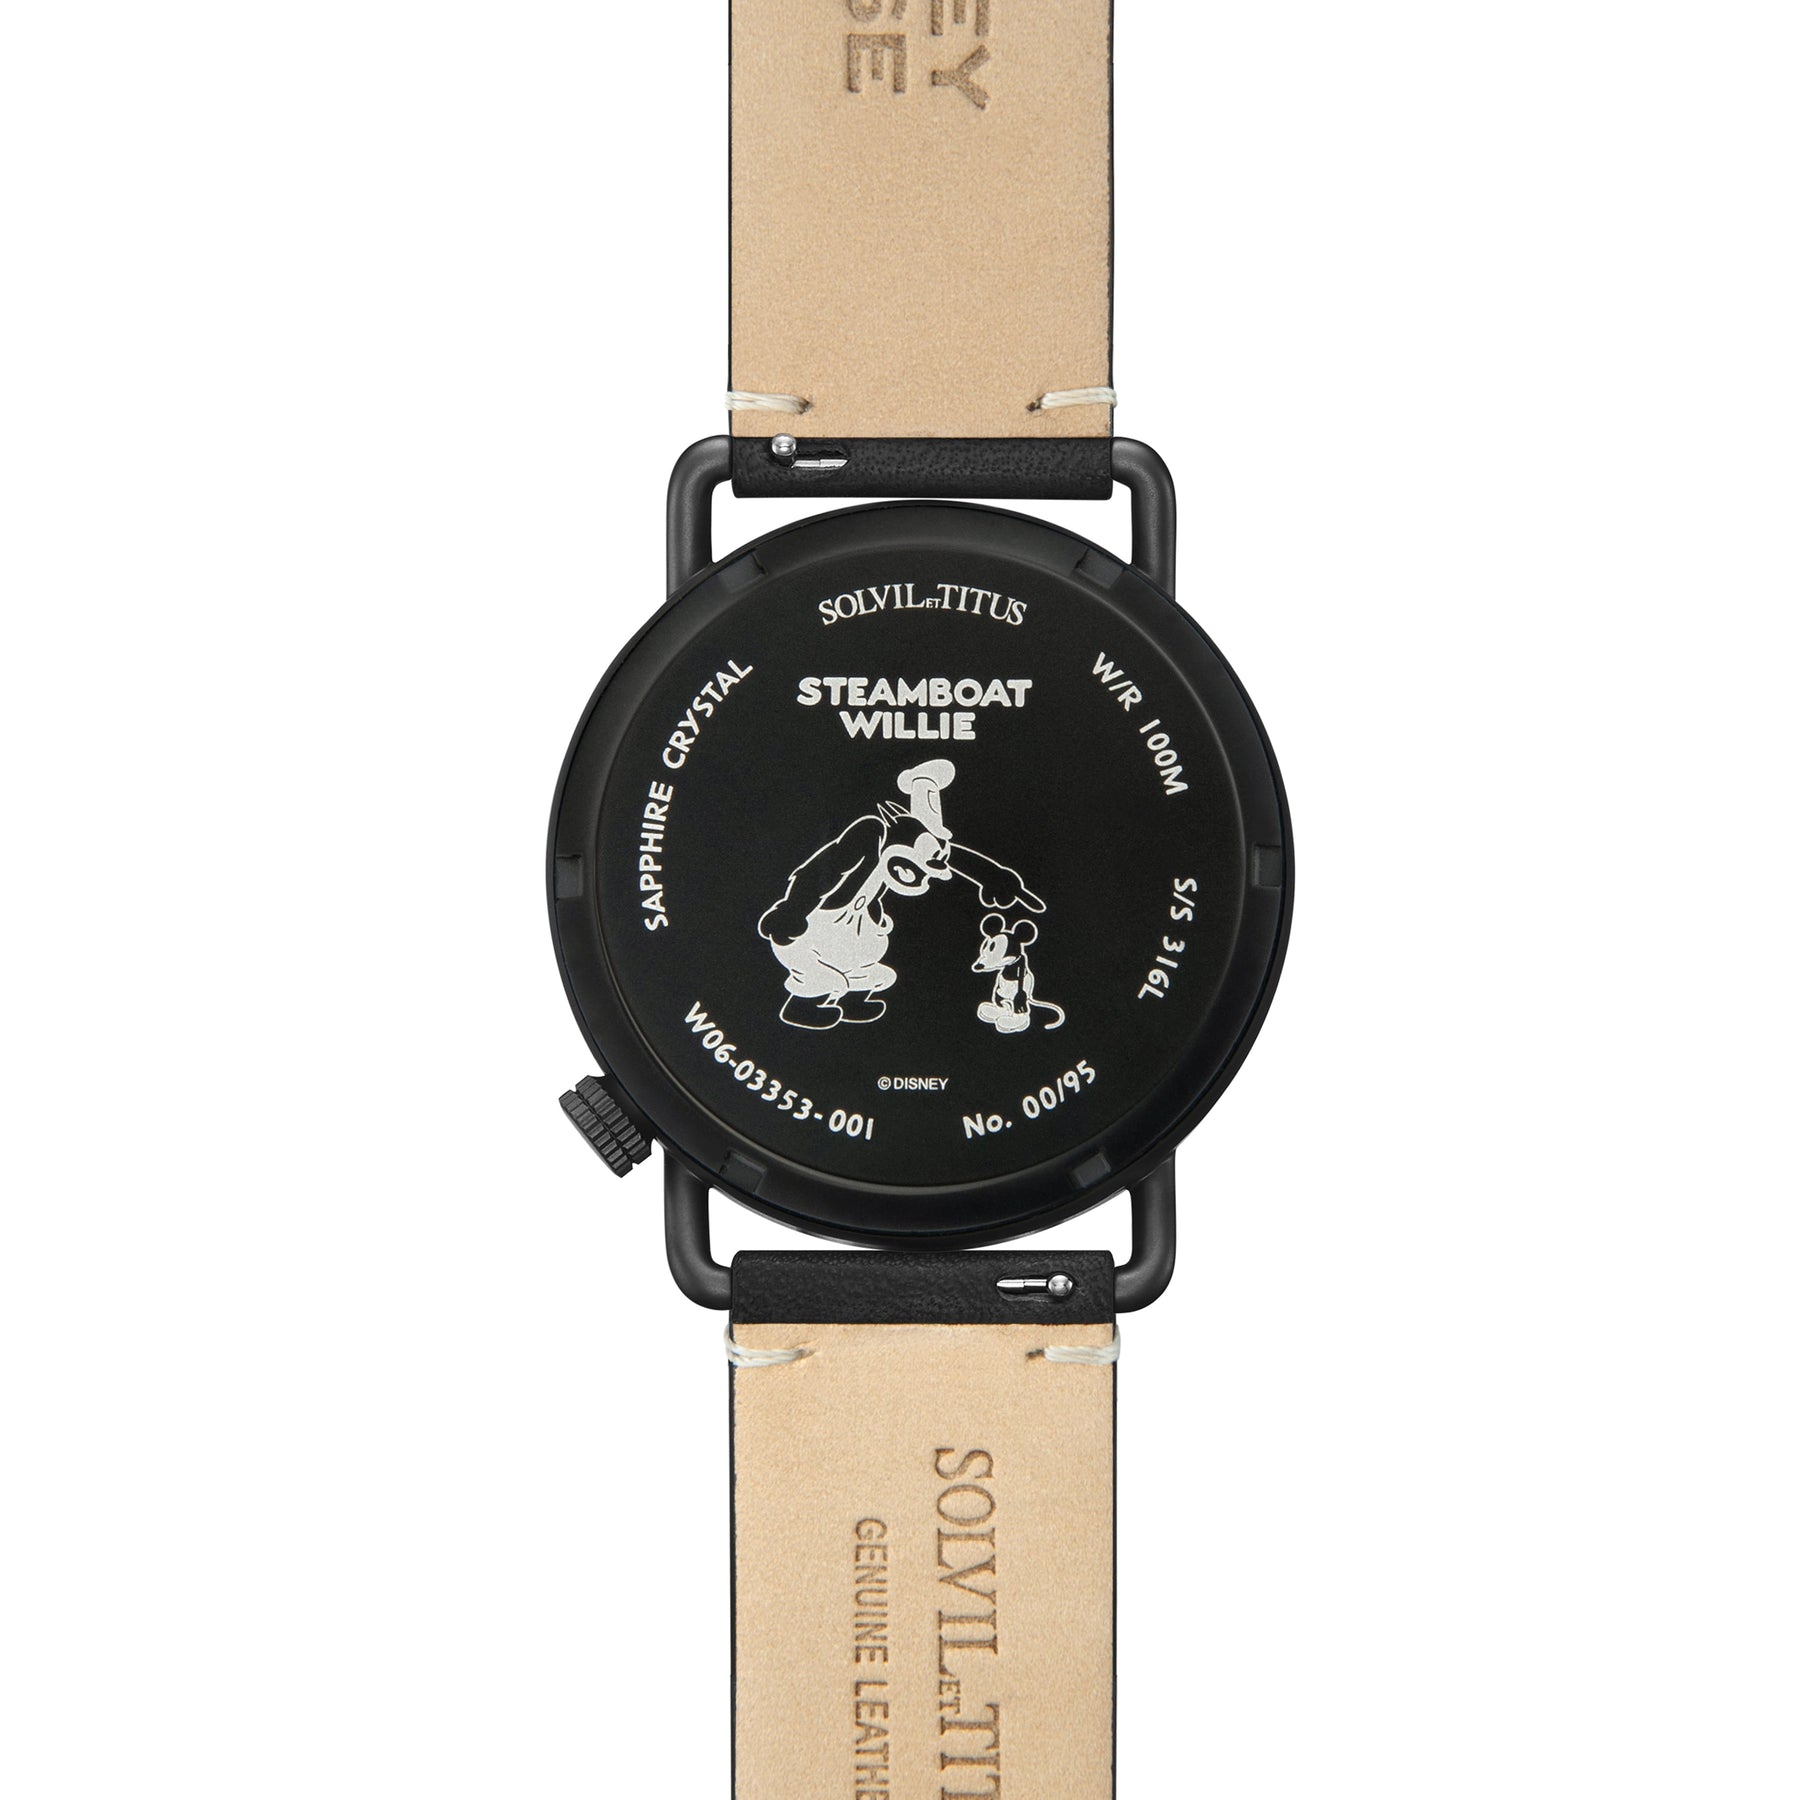 คอลเลกชัน Exquisite “Mickey Mouse 95th Anniversary” นาฬิกาผู้ชาย ลิมิเตดอิดิชัน สีดำ 3 เข็ม ระบบออโตเมติก สายหนัง ขนาดตัวเรือน 40 มม. (W06-03353-001)